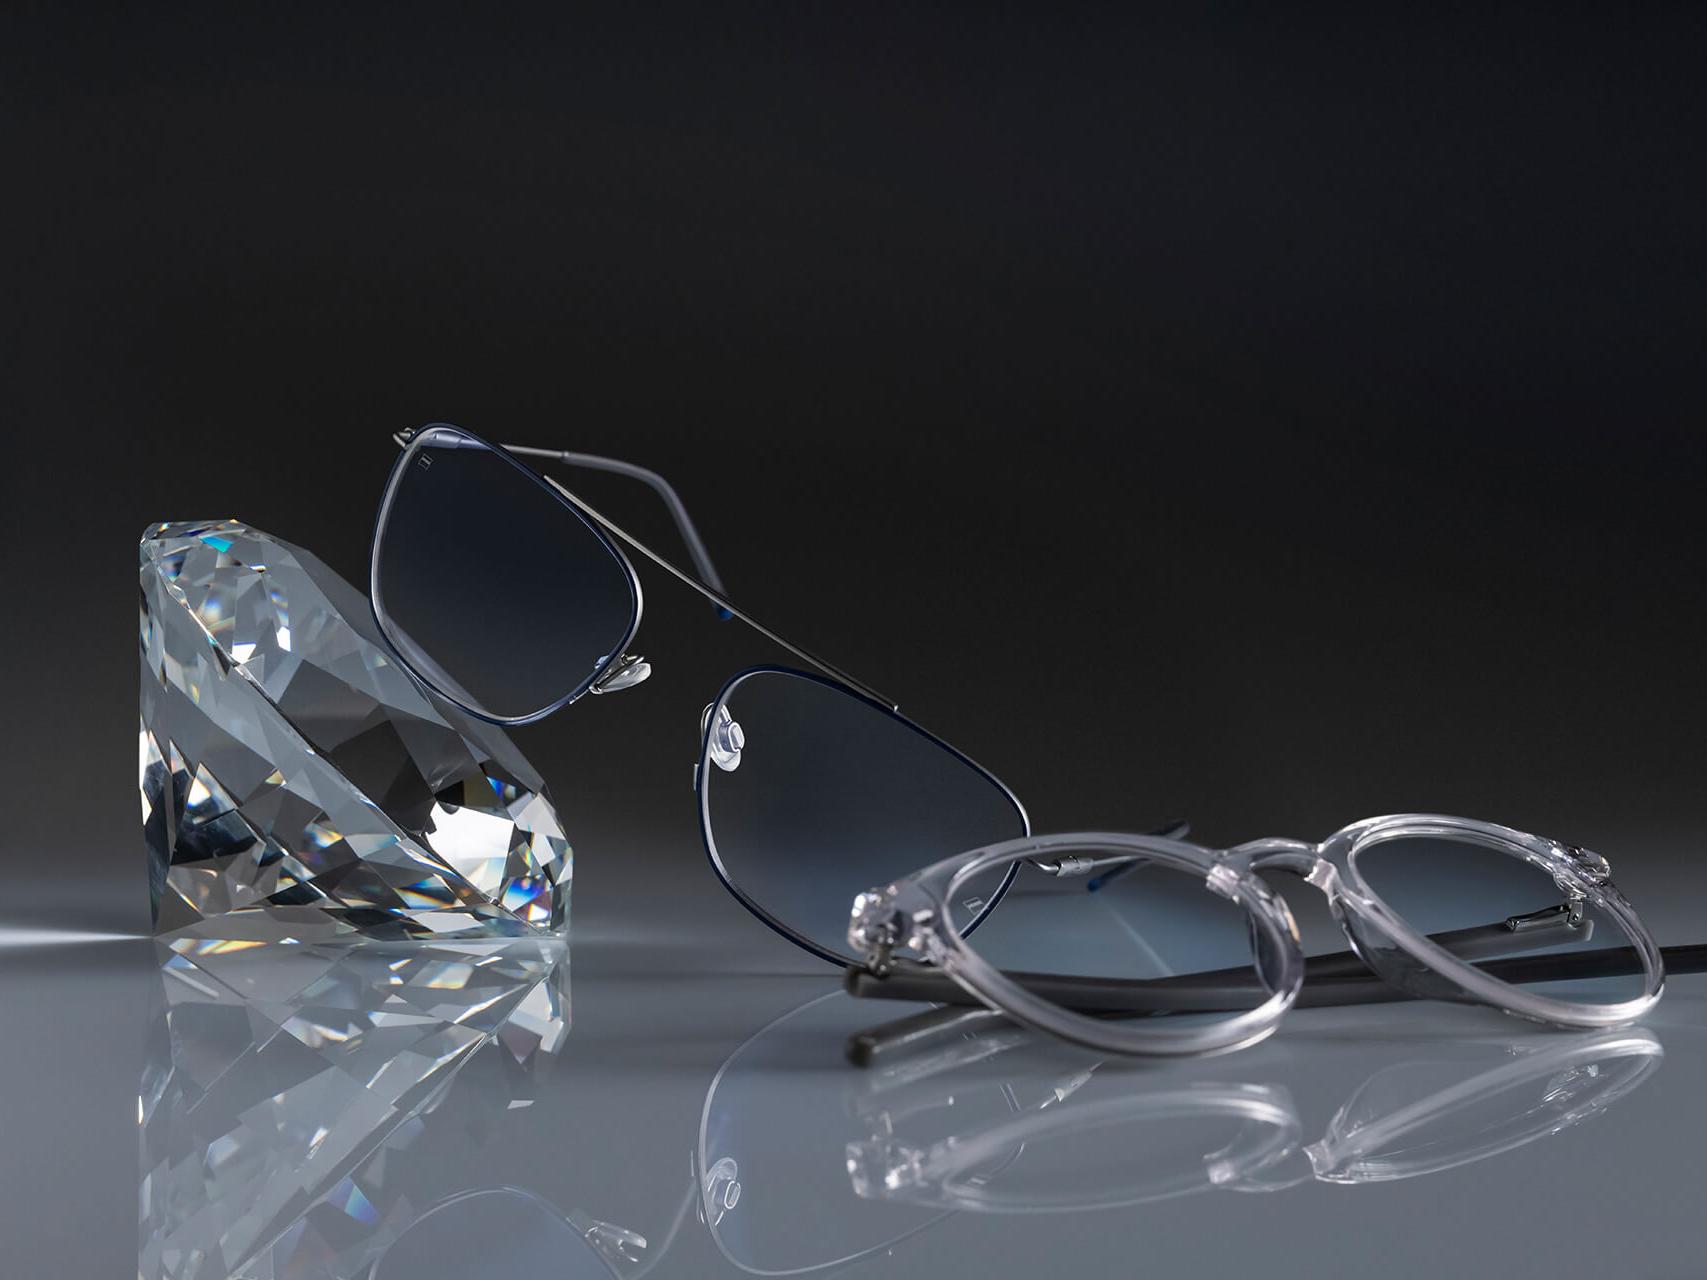 Zwei Brillen mit ZEISS Brillengläsern und der härtesten ZEISS Beschichtung aller Zeiten – DuraVision® Platinum. Eine Brille ist an einen Kristall angelehnt, die andere liegt flach auf dem Boden. Bei beiden sind die Brillengläser absolut klar, ohne bläuliche Reflexionen.